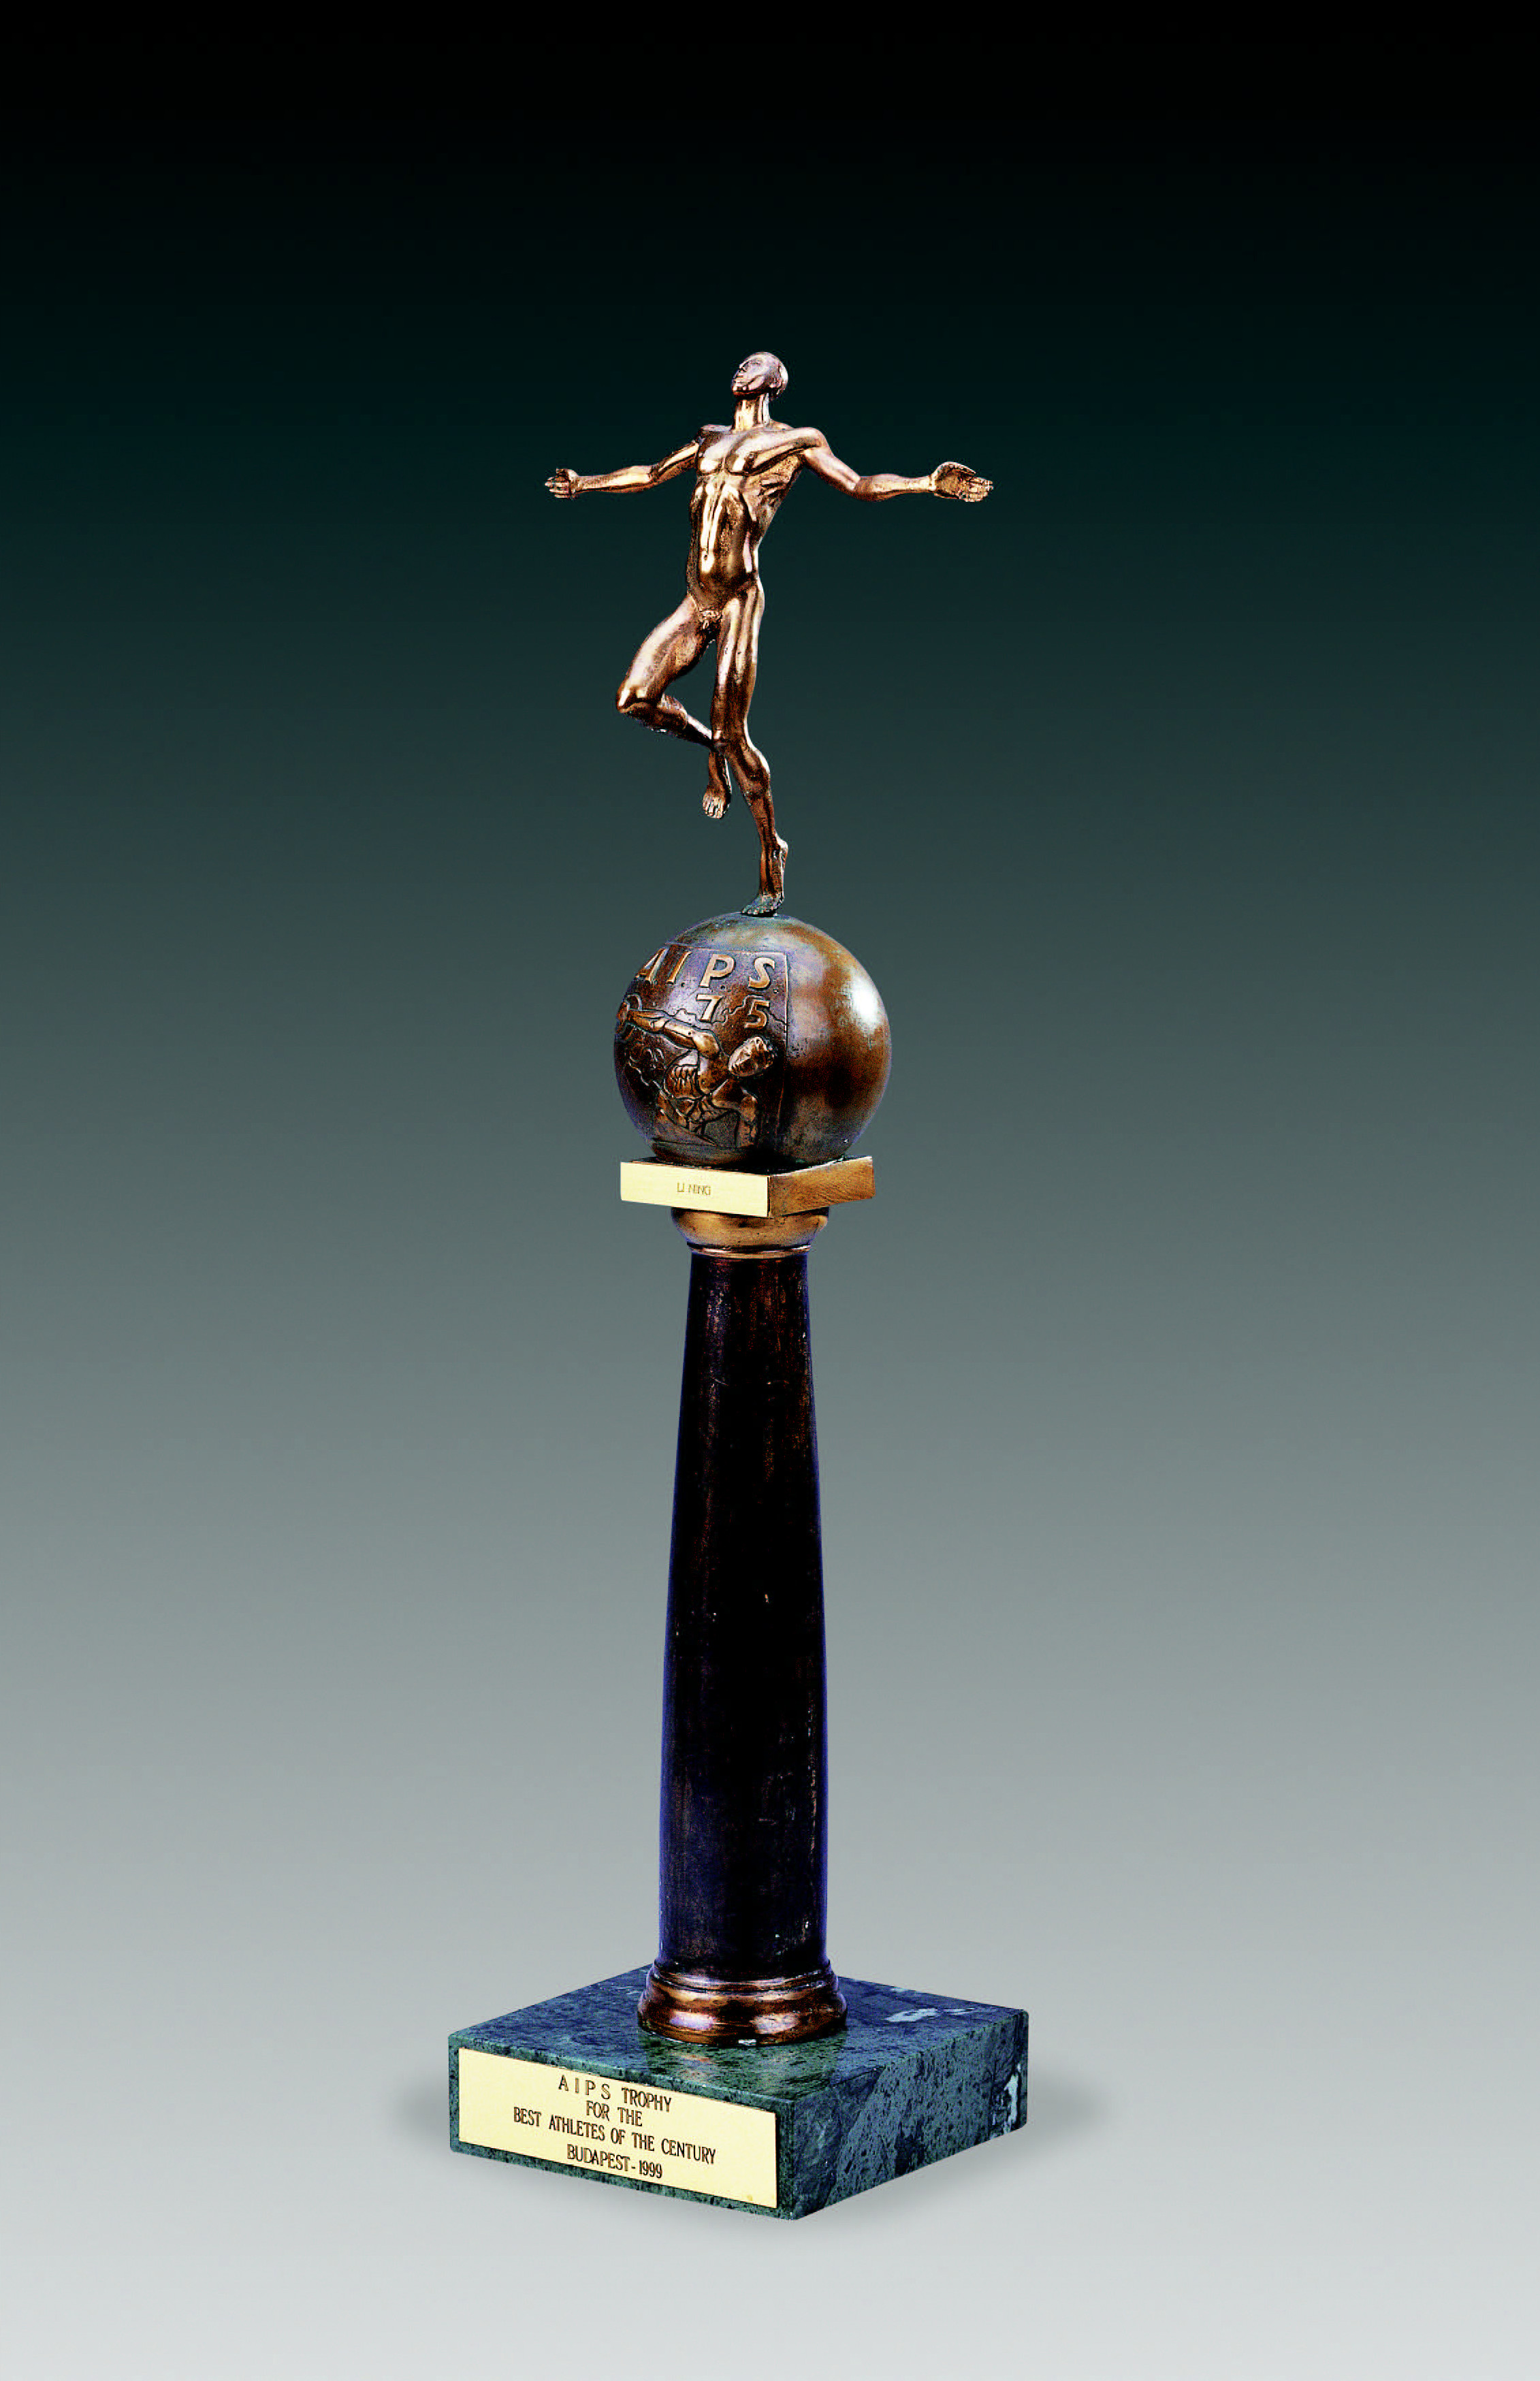 国际体育记者协会颁发给李宁的本世纪最佳运动员奖杯